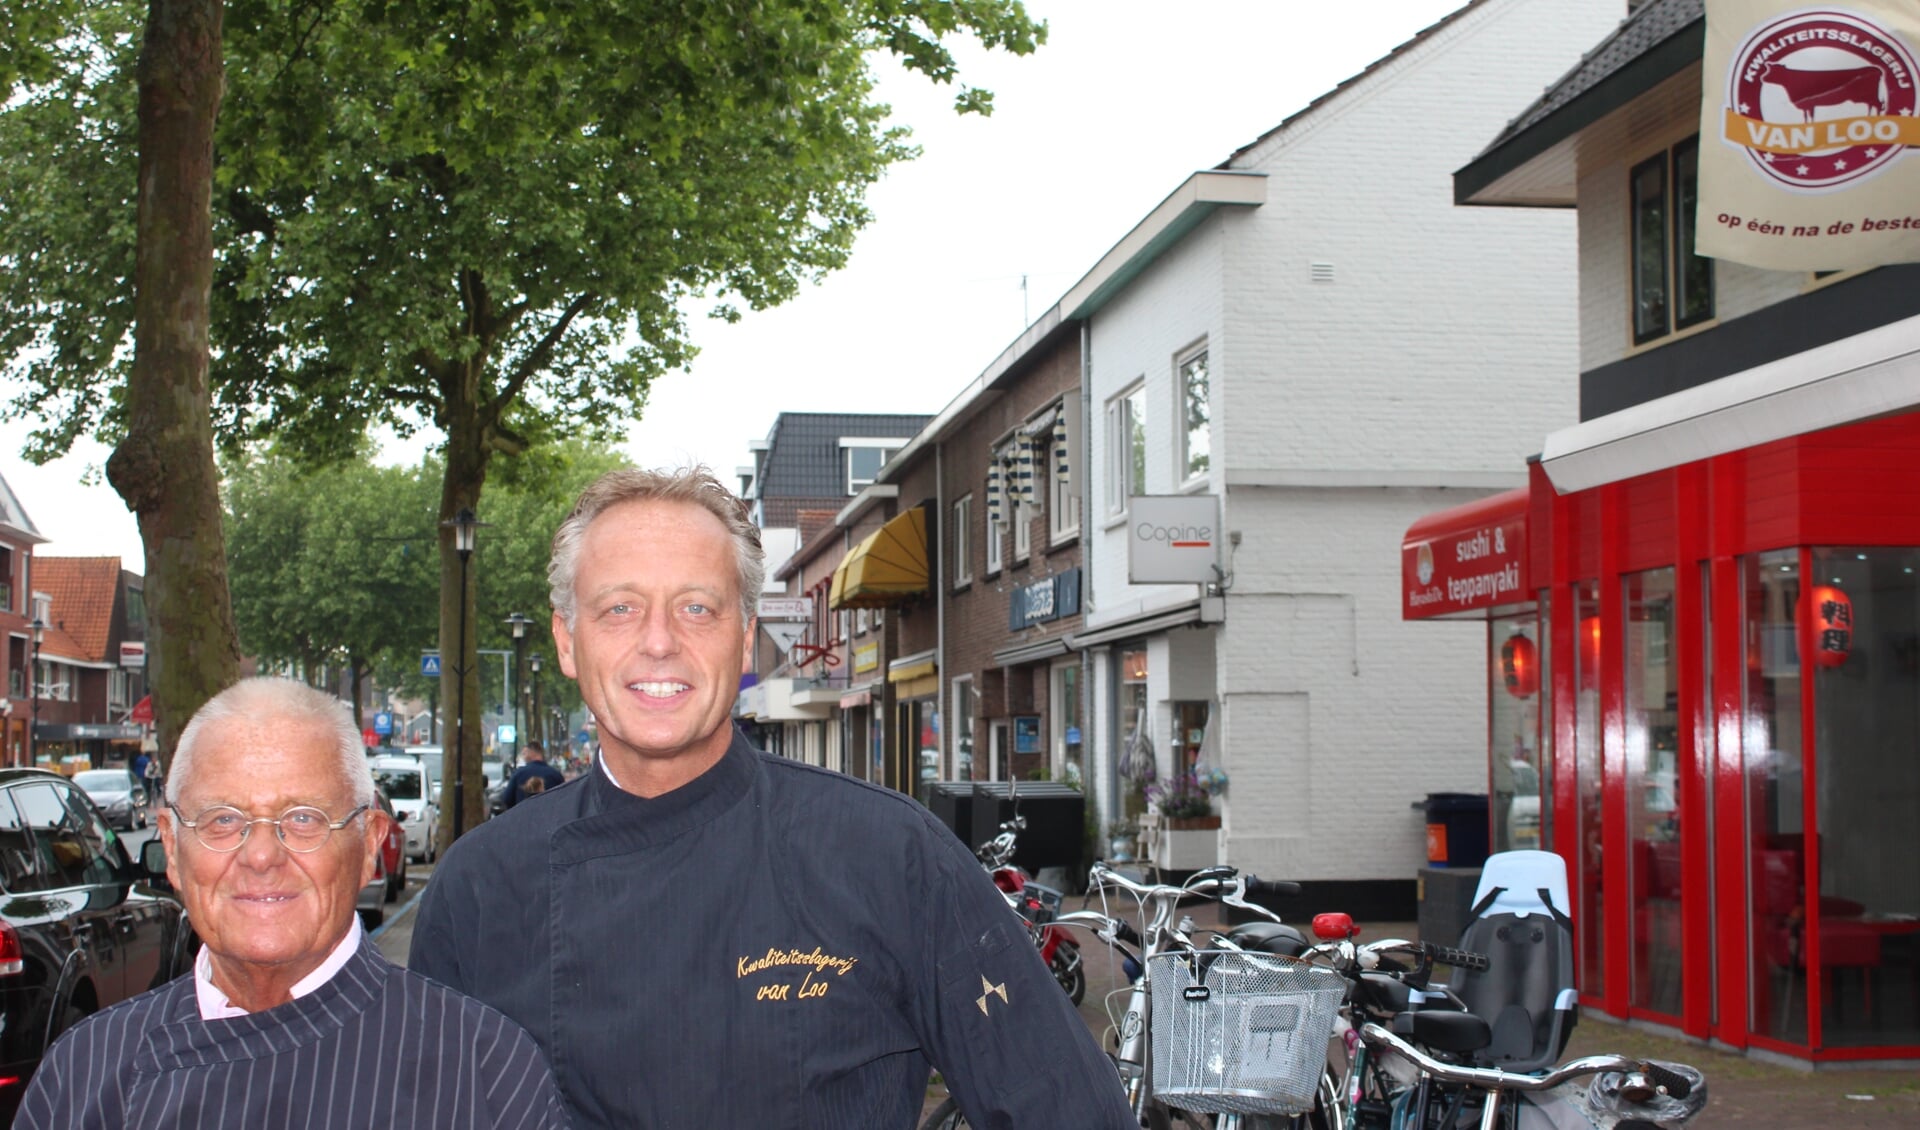 Oud-voorzitter en voorzitter van de Winkeliersvereniging, vader en zoon, Roel en Bas van Loo op de Hessenweg, waar het zaterdag weer ouderwets druk zal zijn.